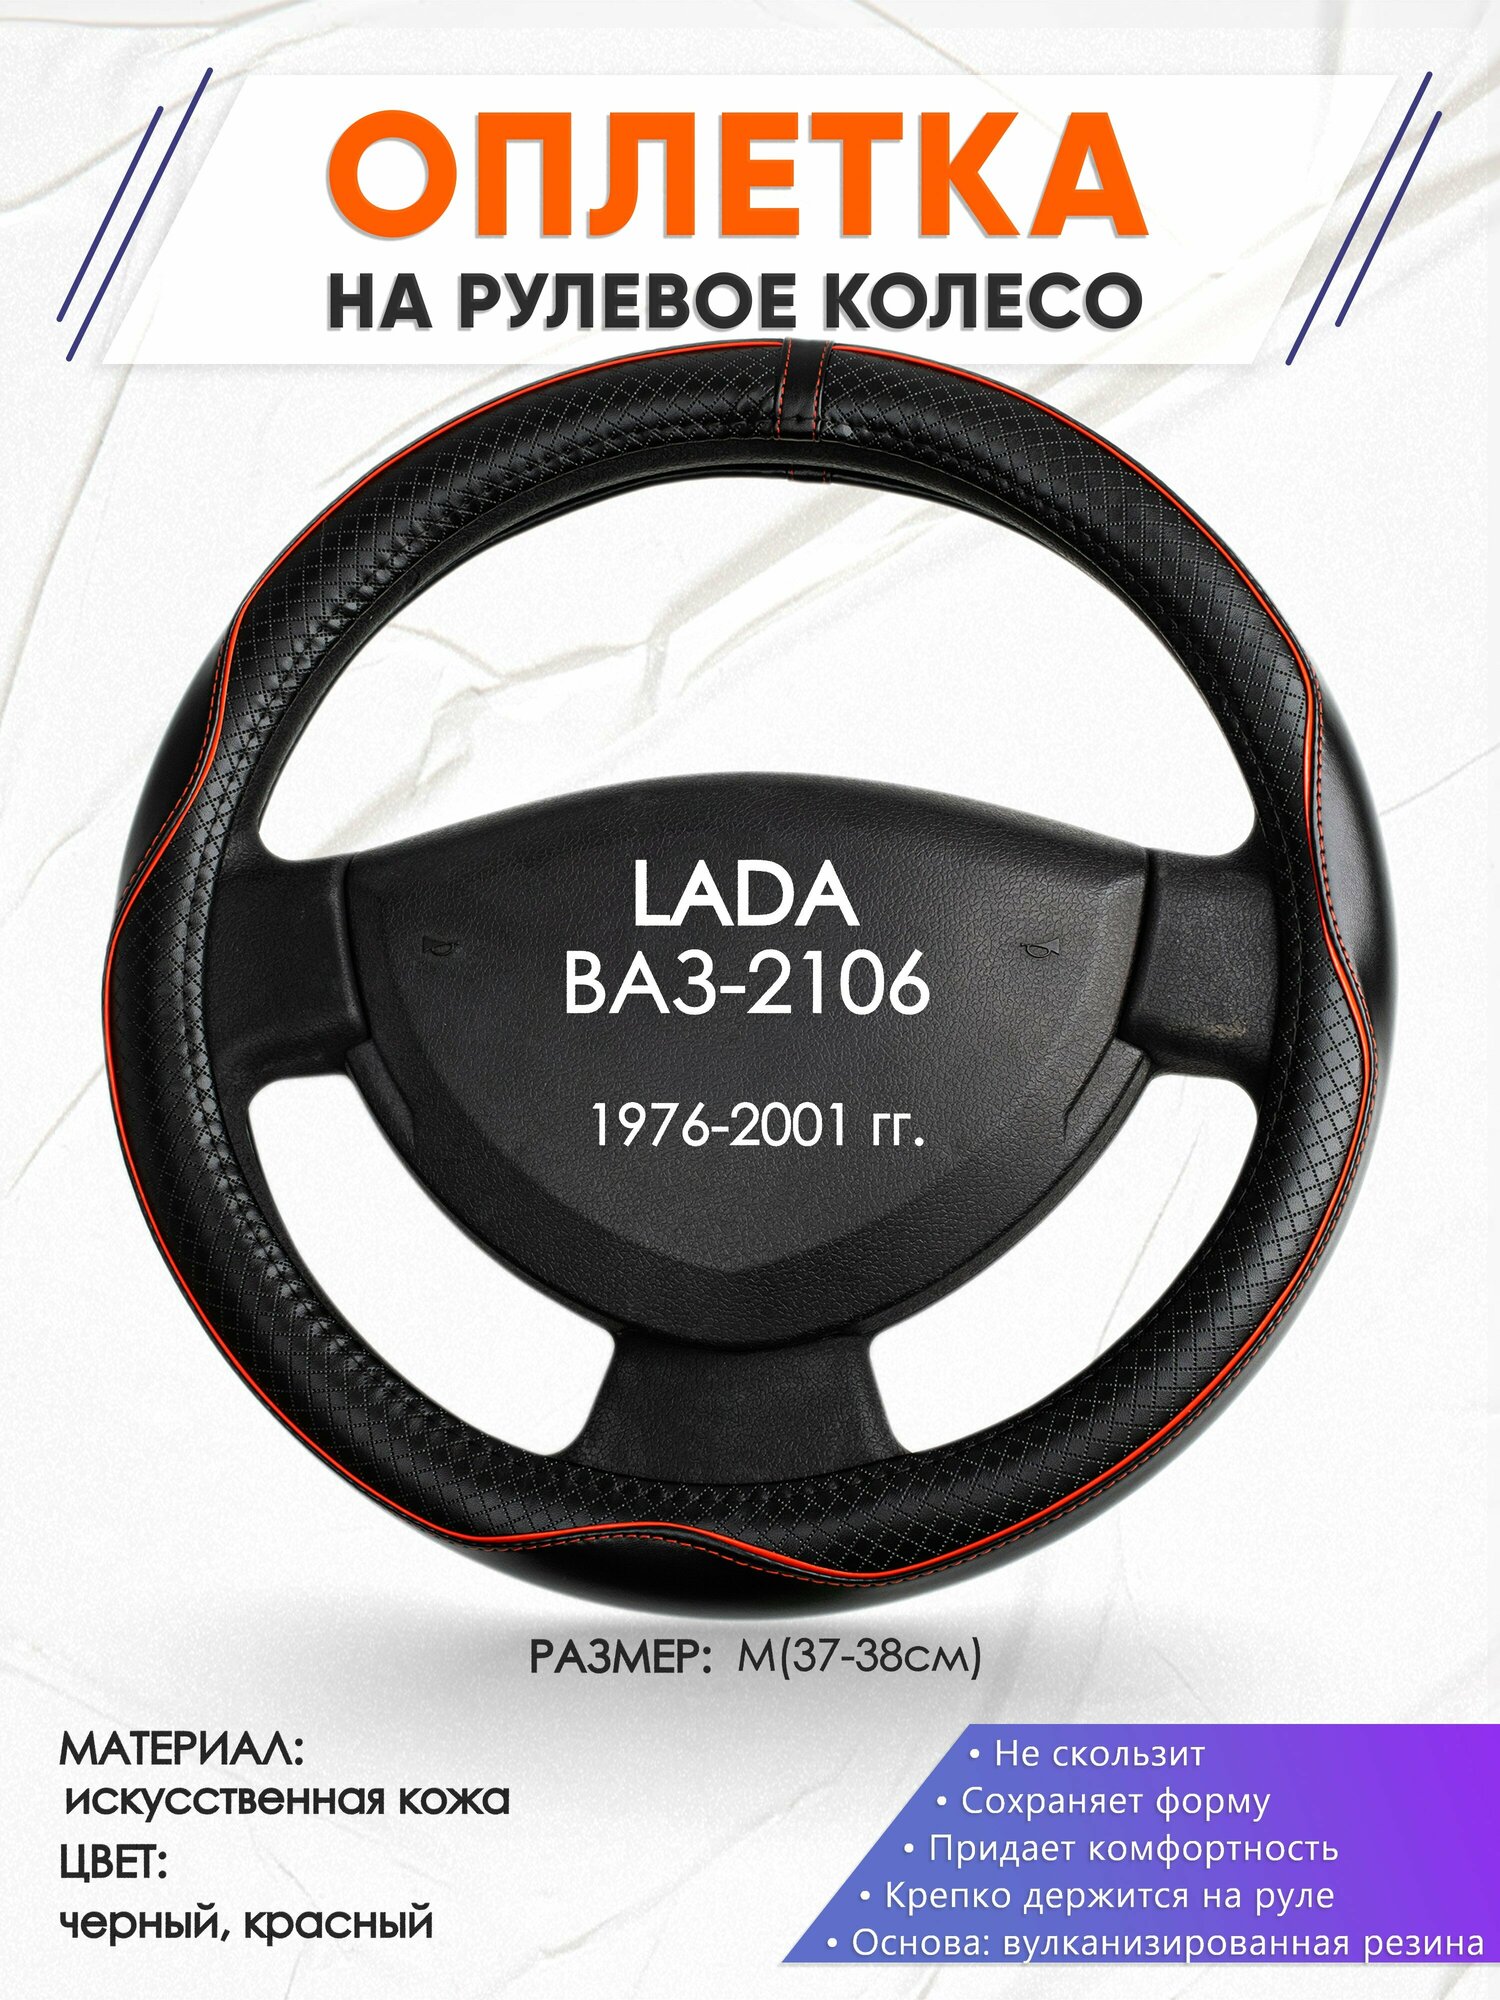 Оплетка наруль для LADA ВАЗ-2106(Лада ВАЗ-2106) 1976-2001 годов выпуска, размер M(37-38см), Искусственная кожа 86